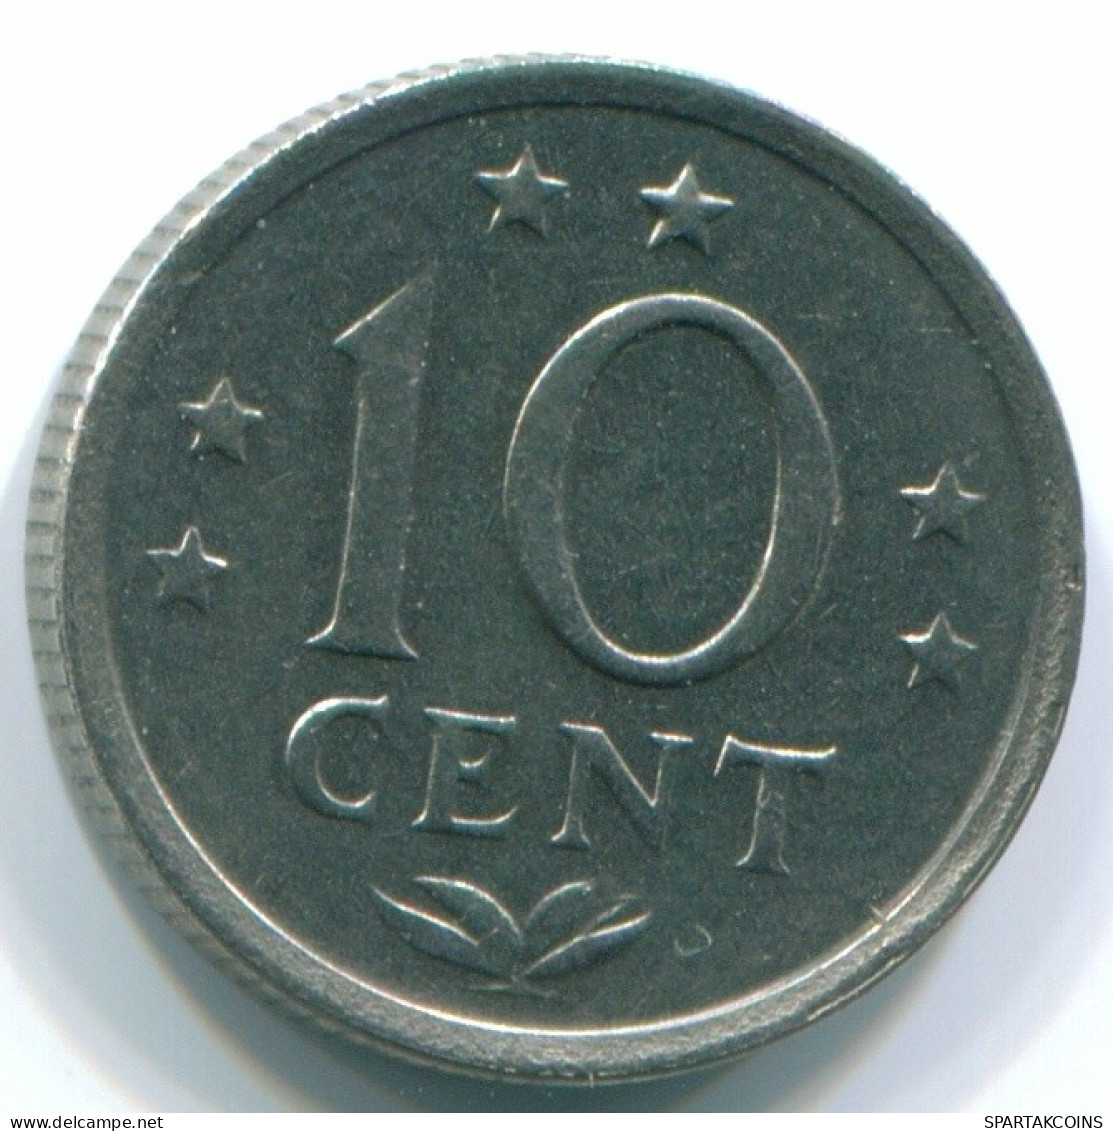 10 CENTS 1970 NIEDERLÄNDISCHE ANTILLEN Nickel Koloniale Münze #S13337.D.A - Antilles Néerlandaises